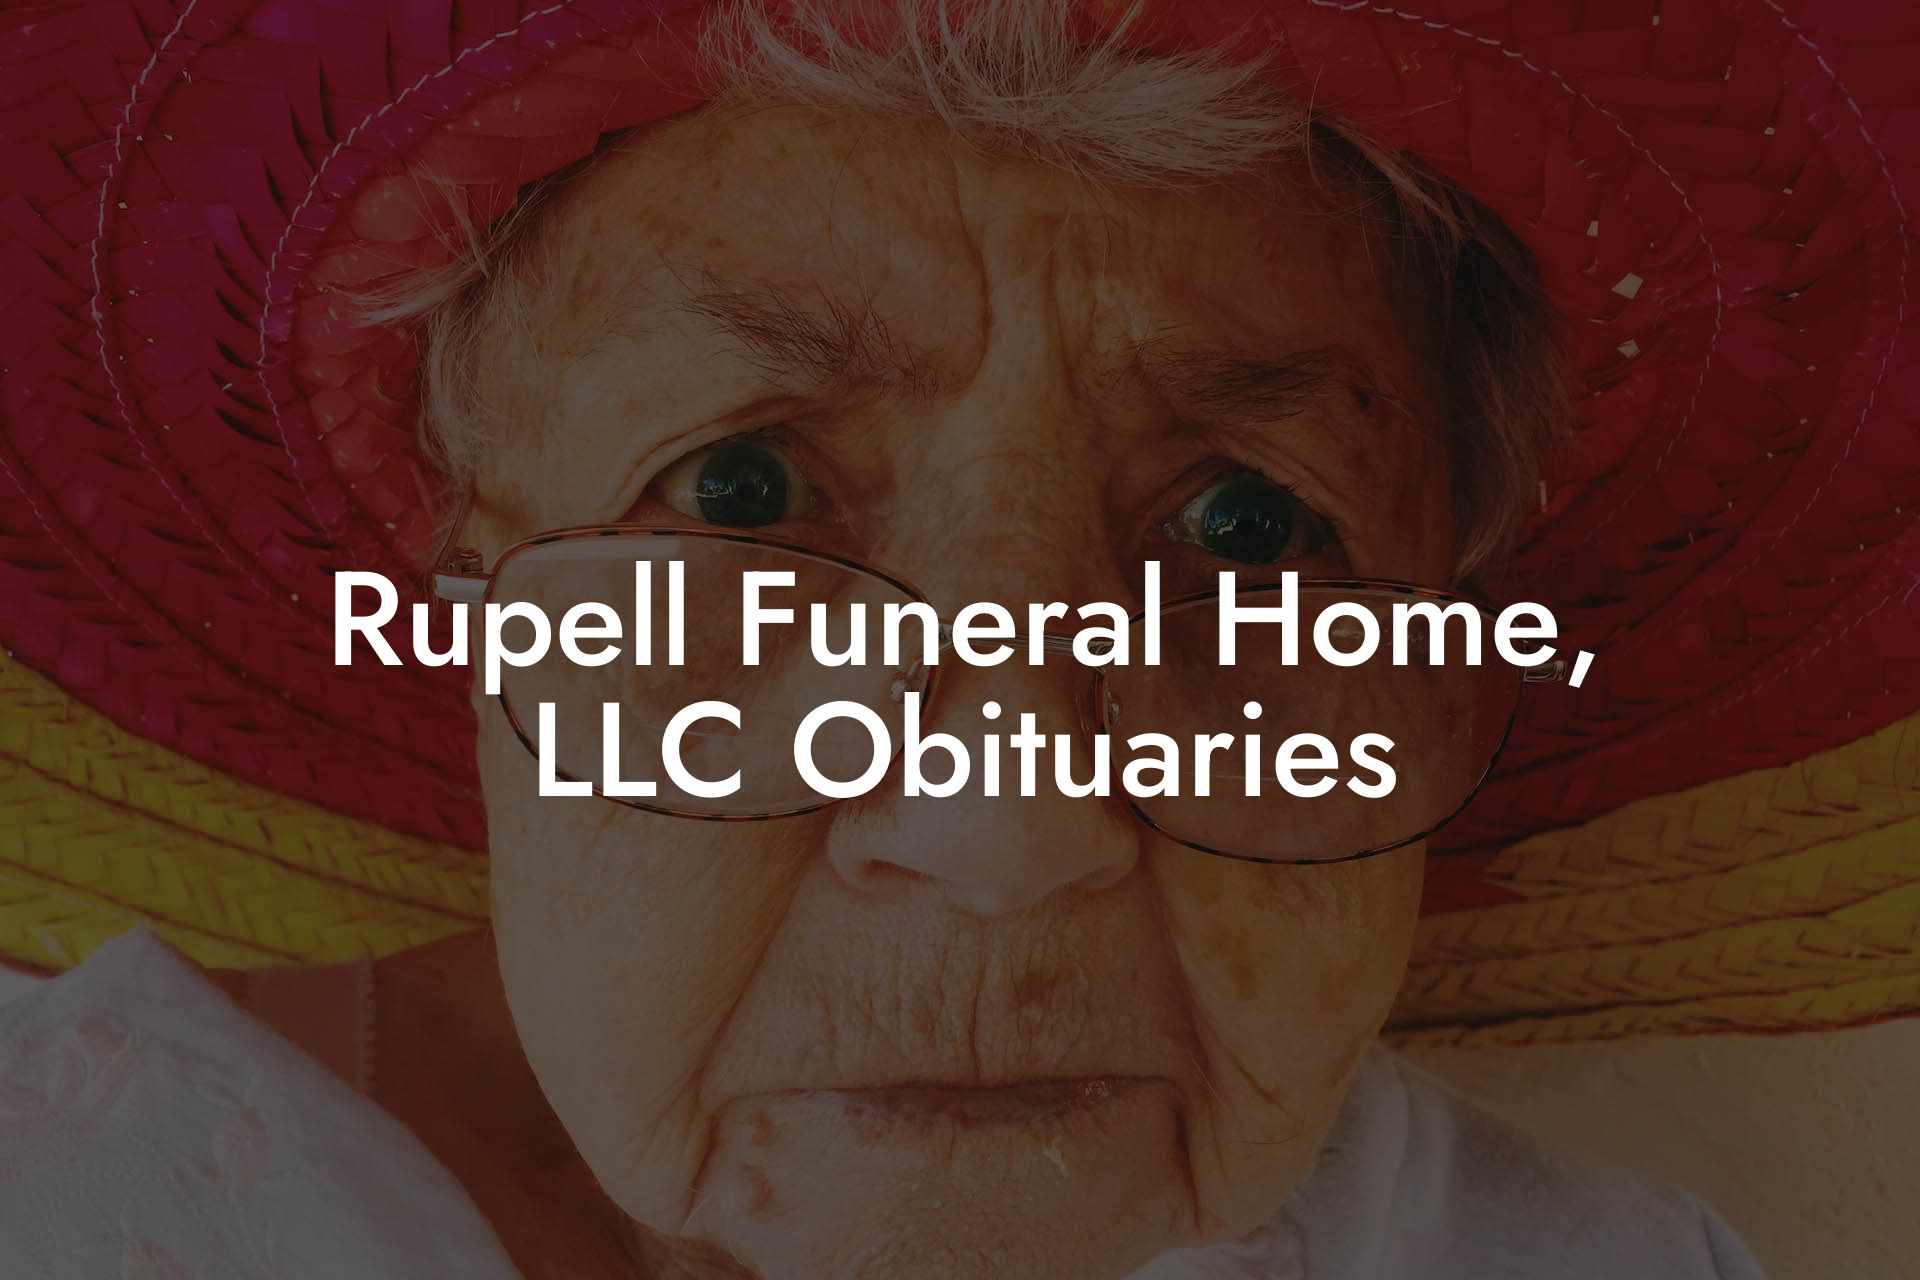 Rupell Funeral Home, LLC Obituaries